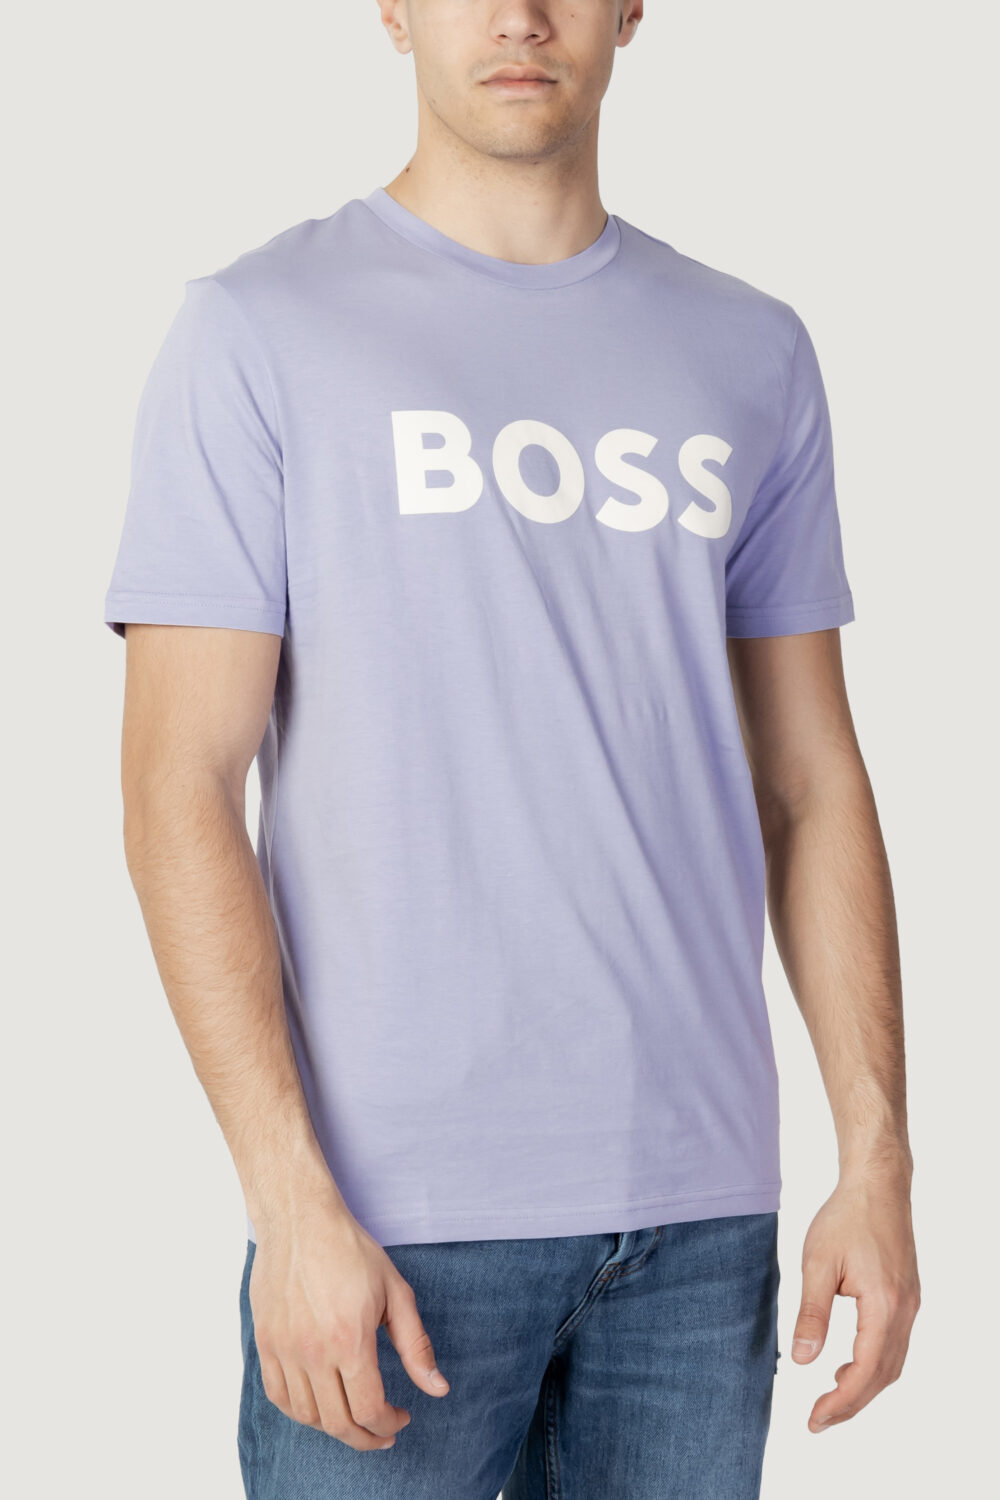 T-shirt Boss jersey thinking 1 Lilla - Foto 1